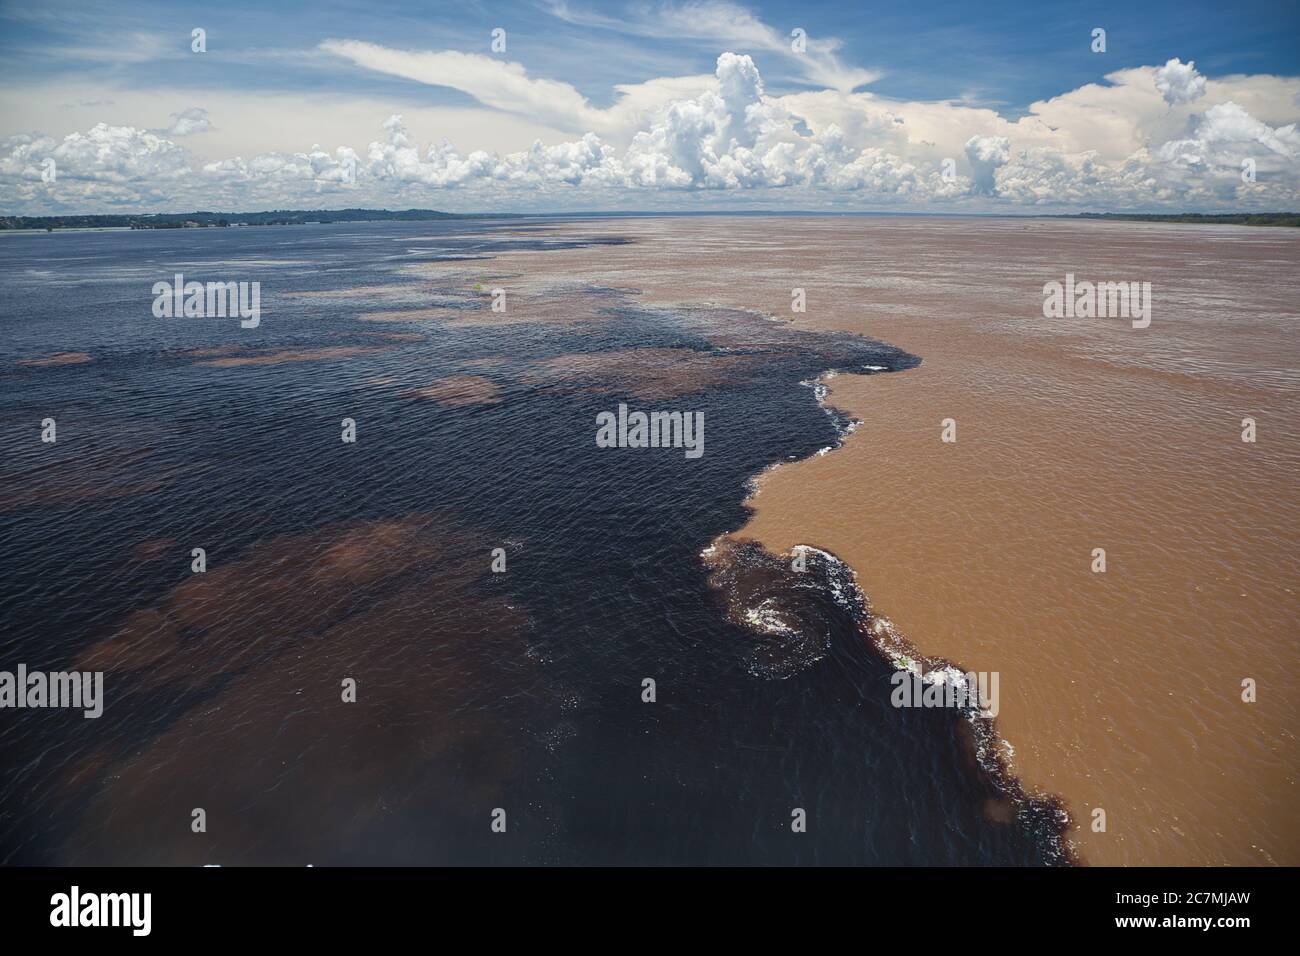 La rencontre des eaux au confluent entre la rivière Rio Negro sombre et la rivière amazonienne de couleur sablonneuse, près de Manaus dans l'État d'Amazonas, au Brésil Banque D'Images